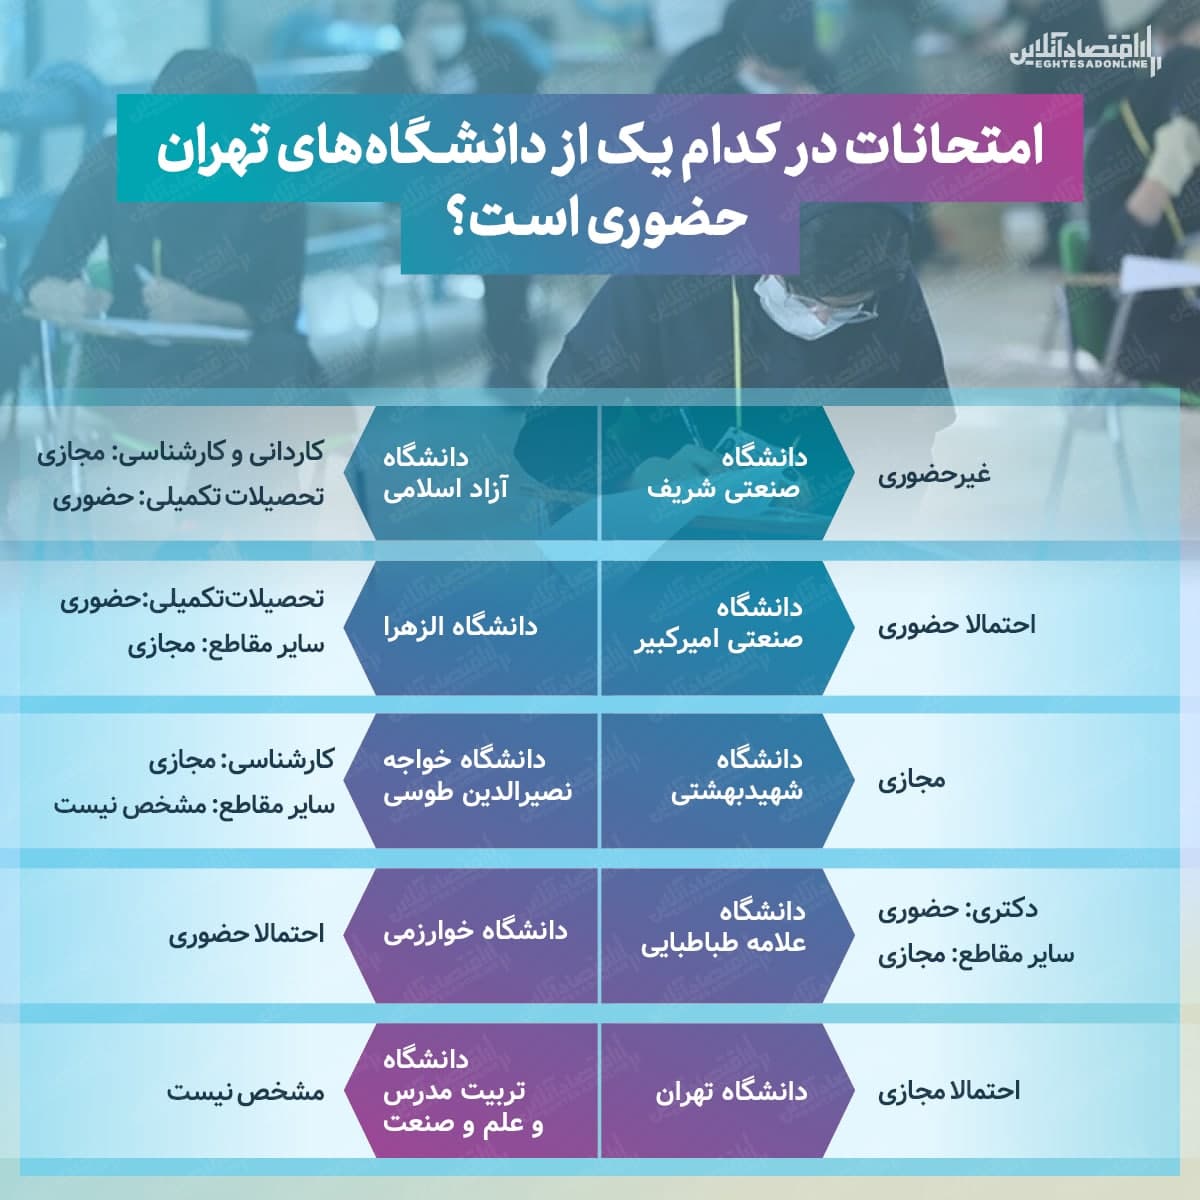 امتحانات کدام دانشگاه های تهران حضوری شد؟